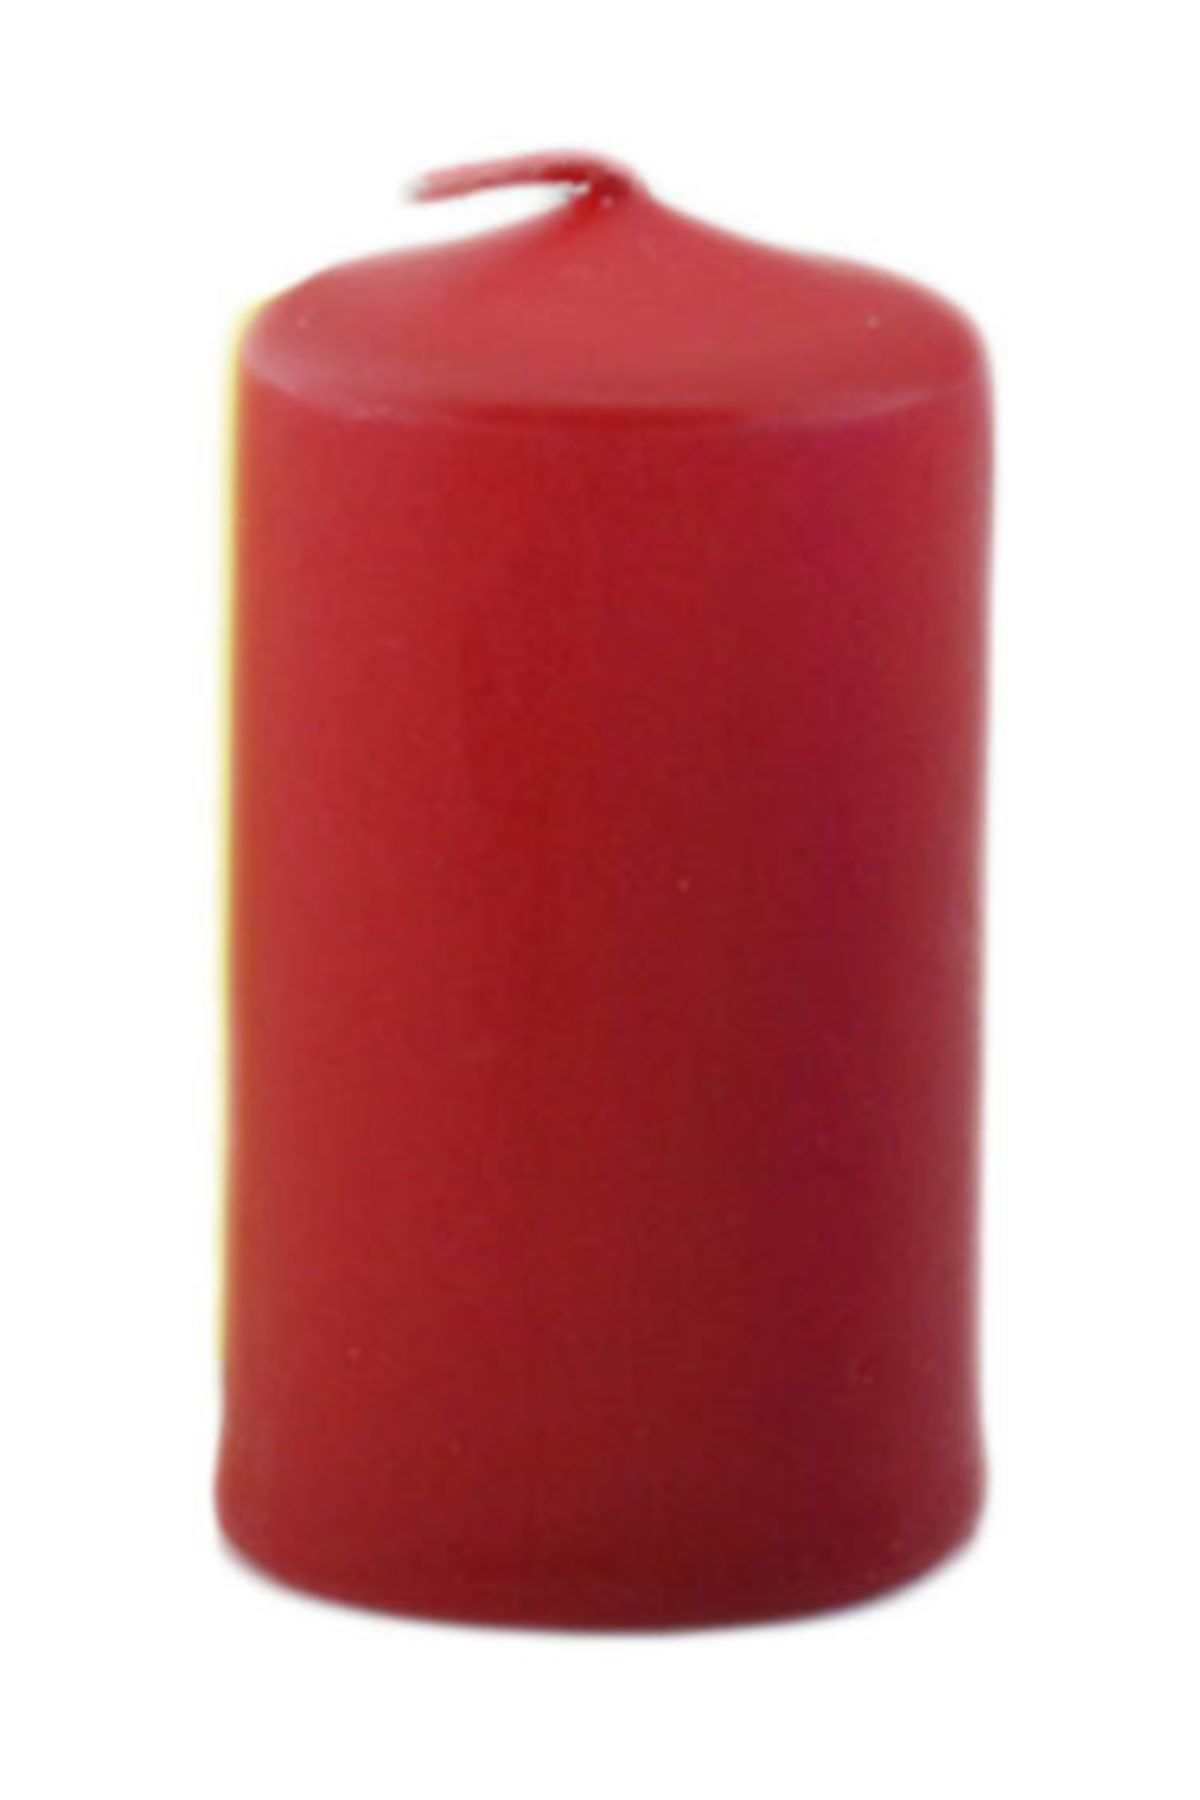 TT Tahtakale Toptancıları Silindir Mum Renkli 6 Cm (6 Adet)  Kırmızı